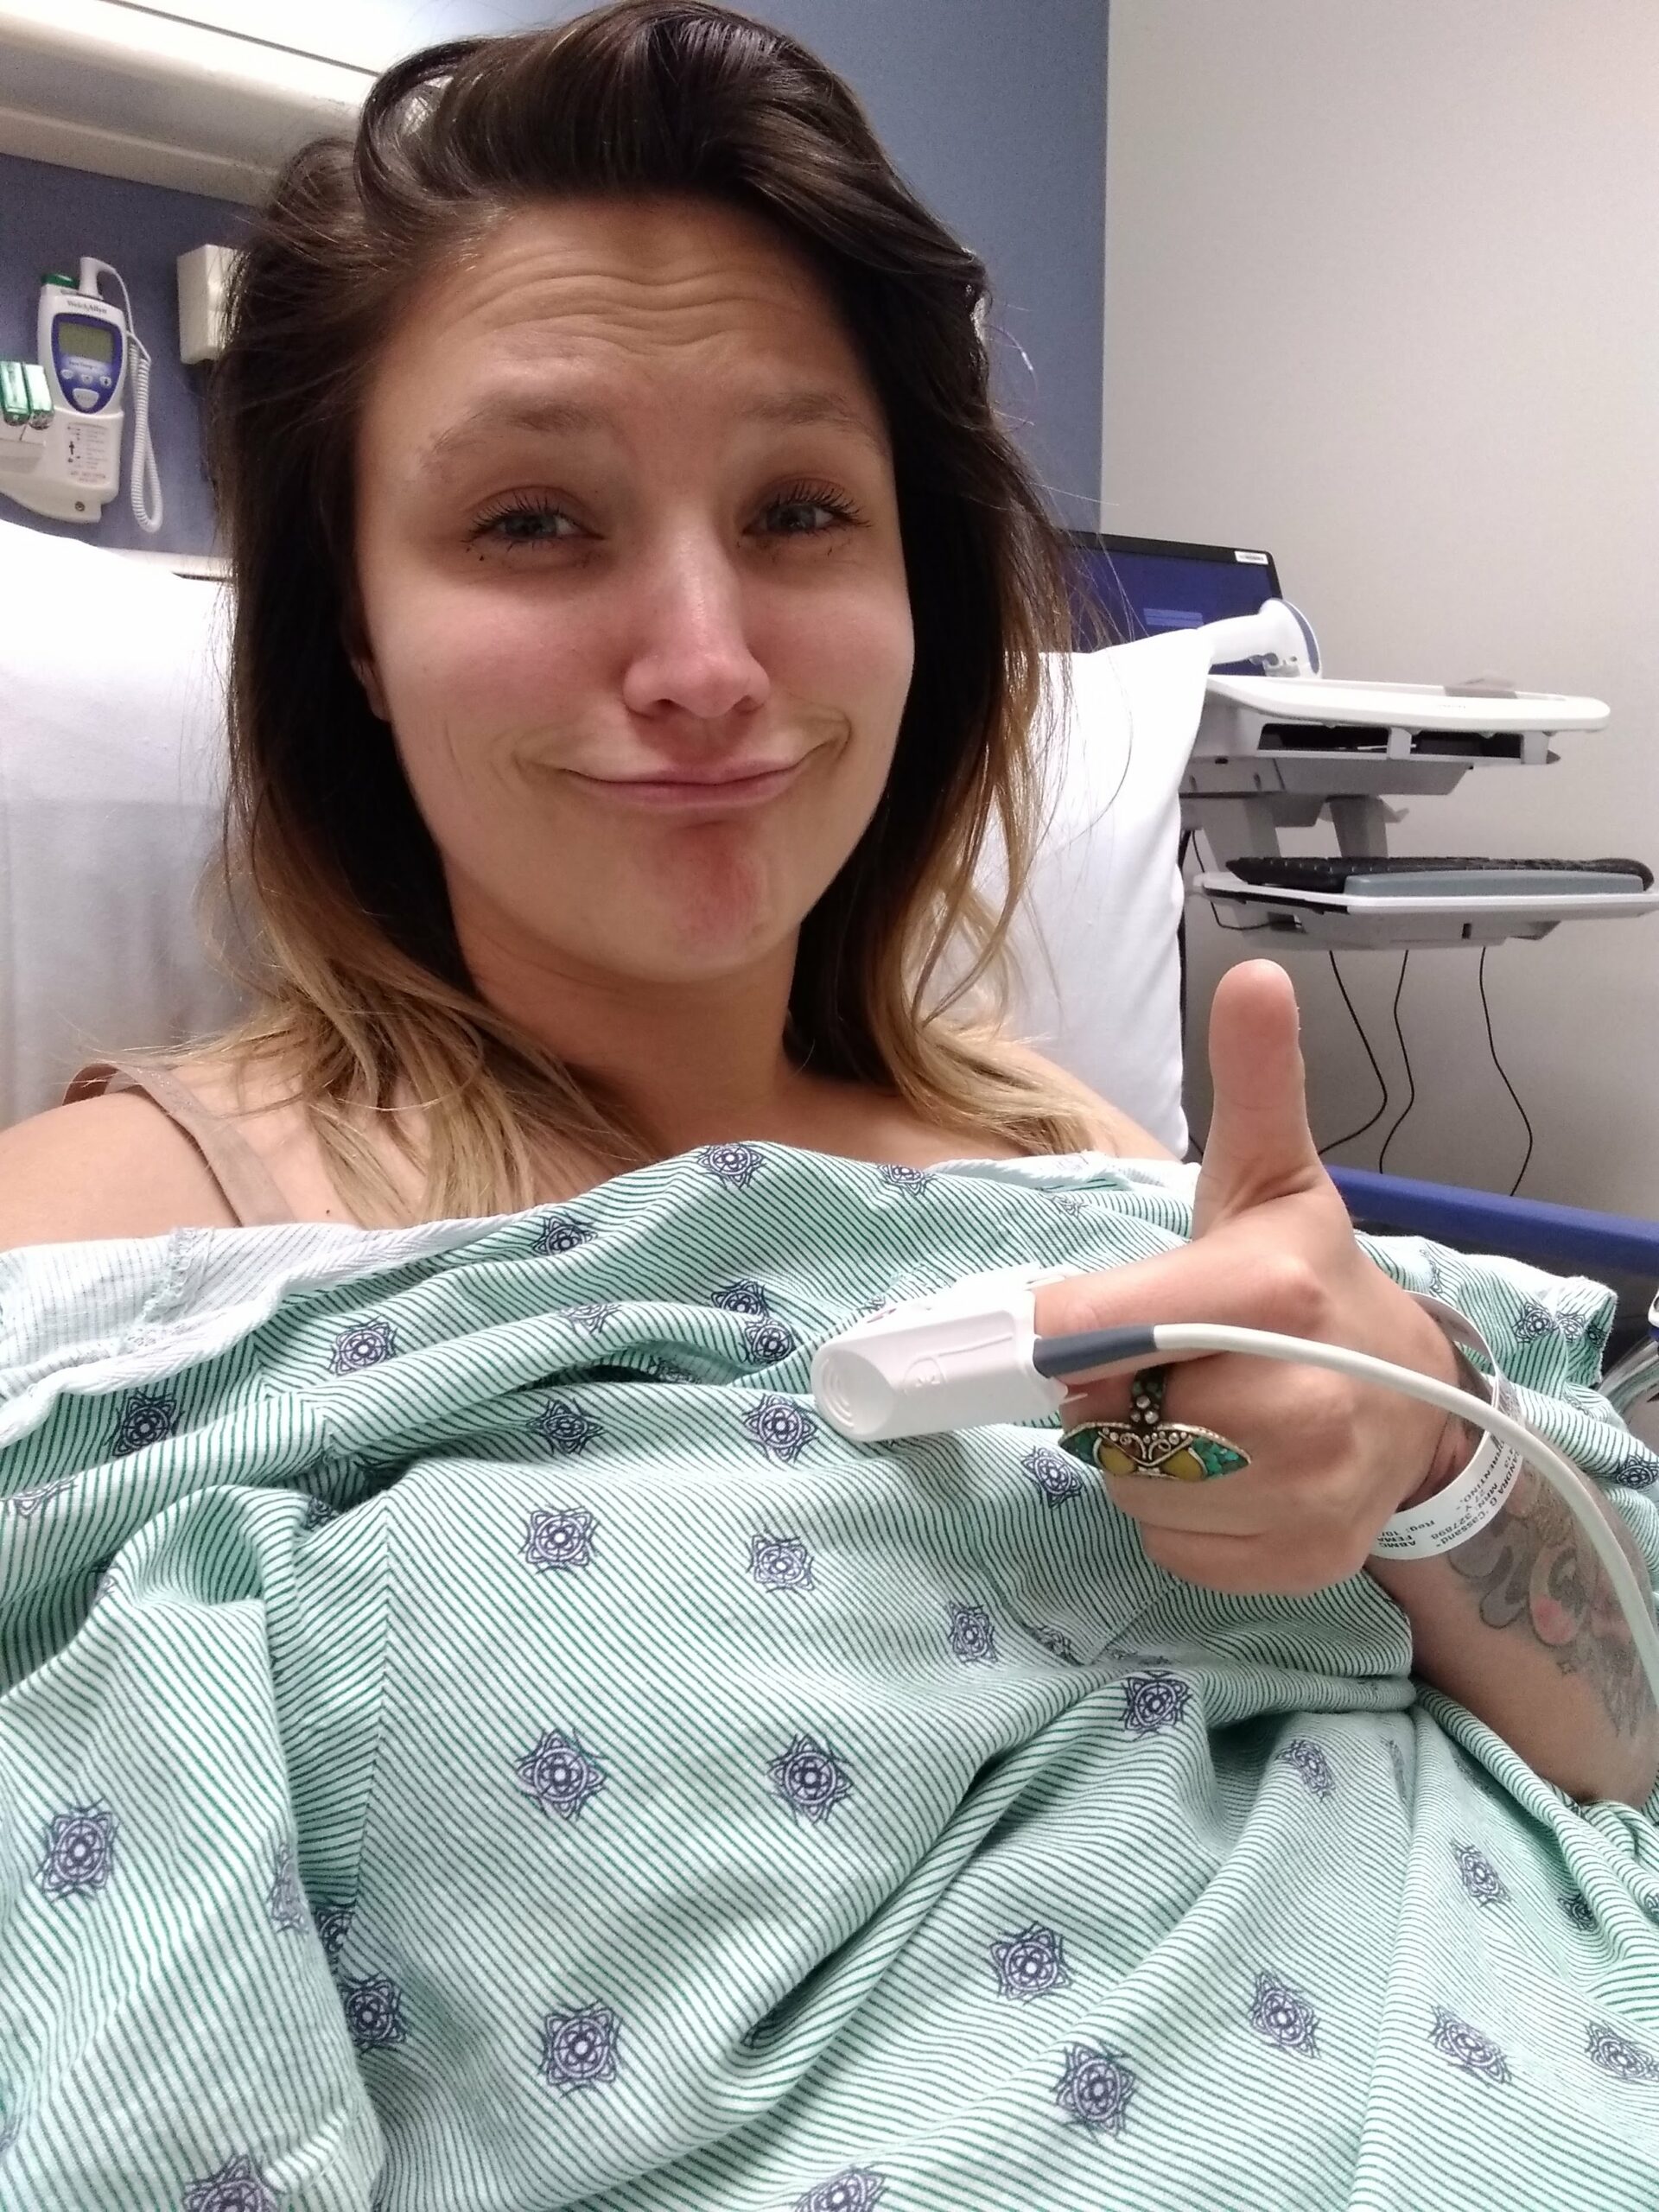 Cassandra Thistle in the hospital selfie